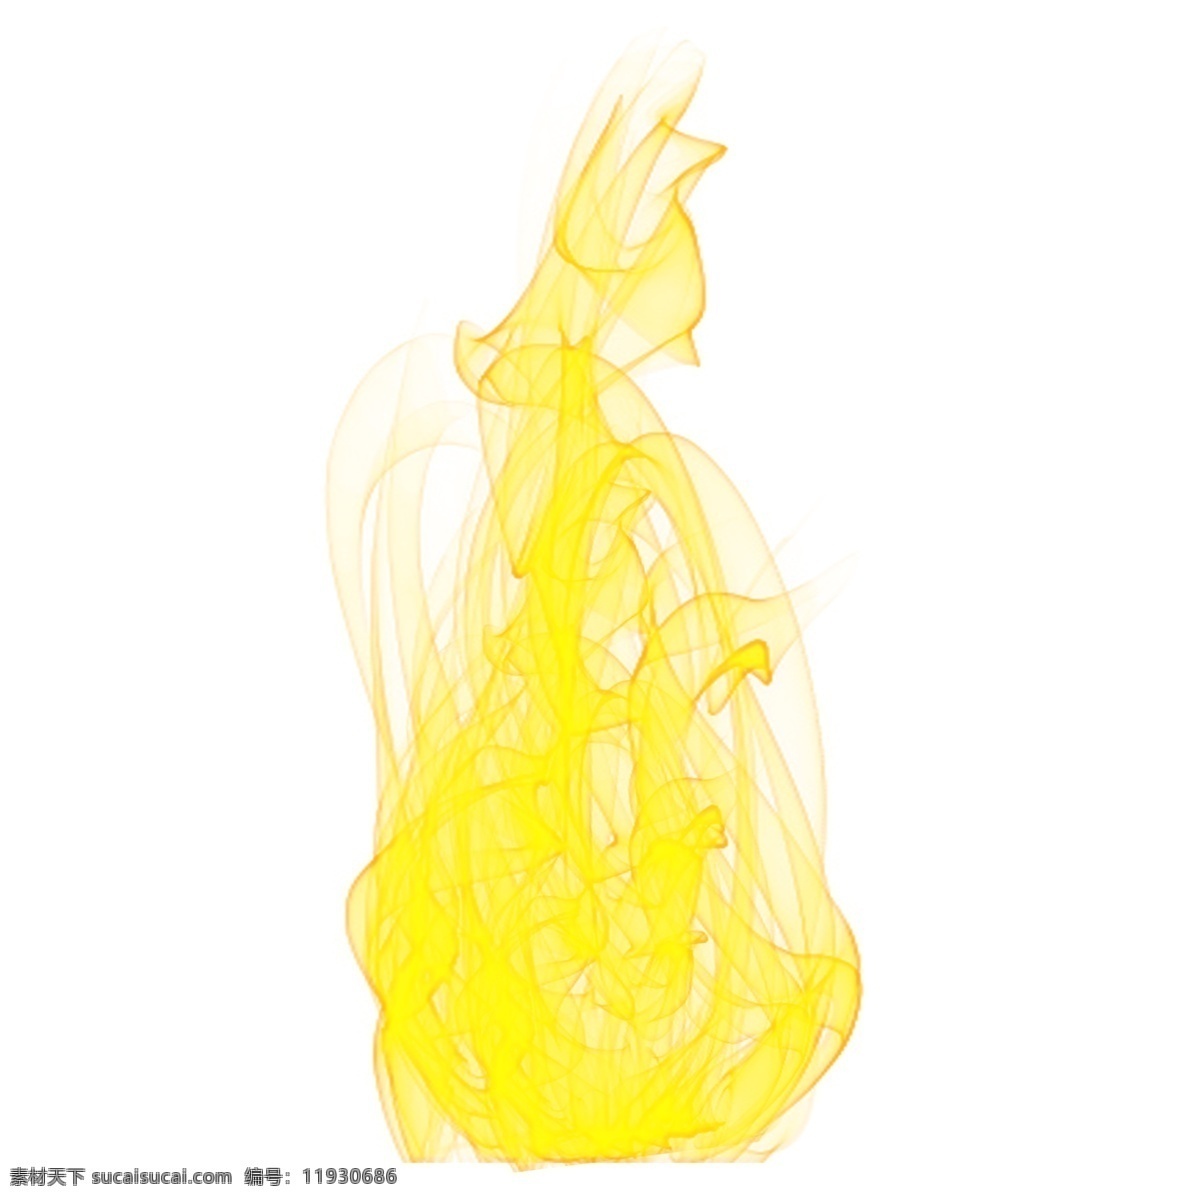 黄色 火焰 效果 元素 火苗 火 炫酷 烈焰 燃烧 烈火 火焰矢量 跳动的火焰 艺术火焰 黄色火焰